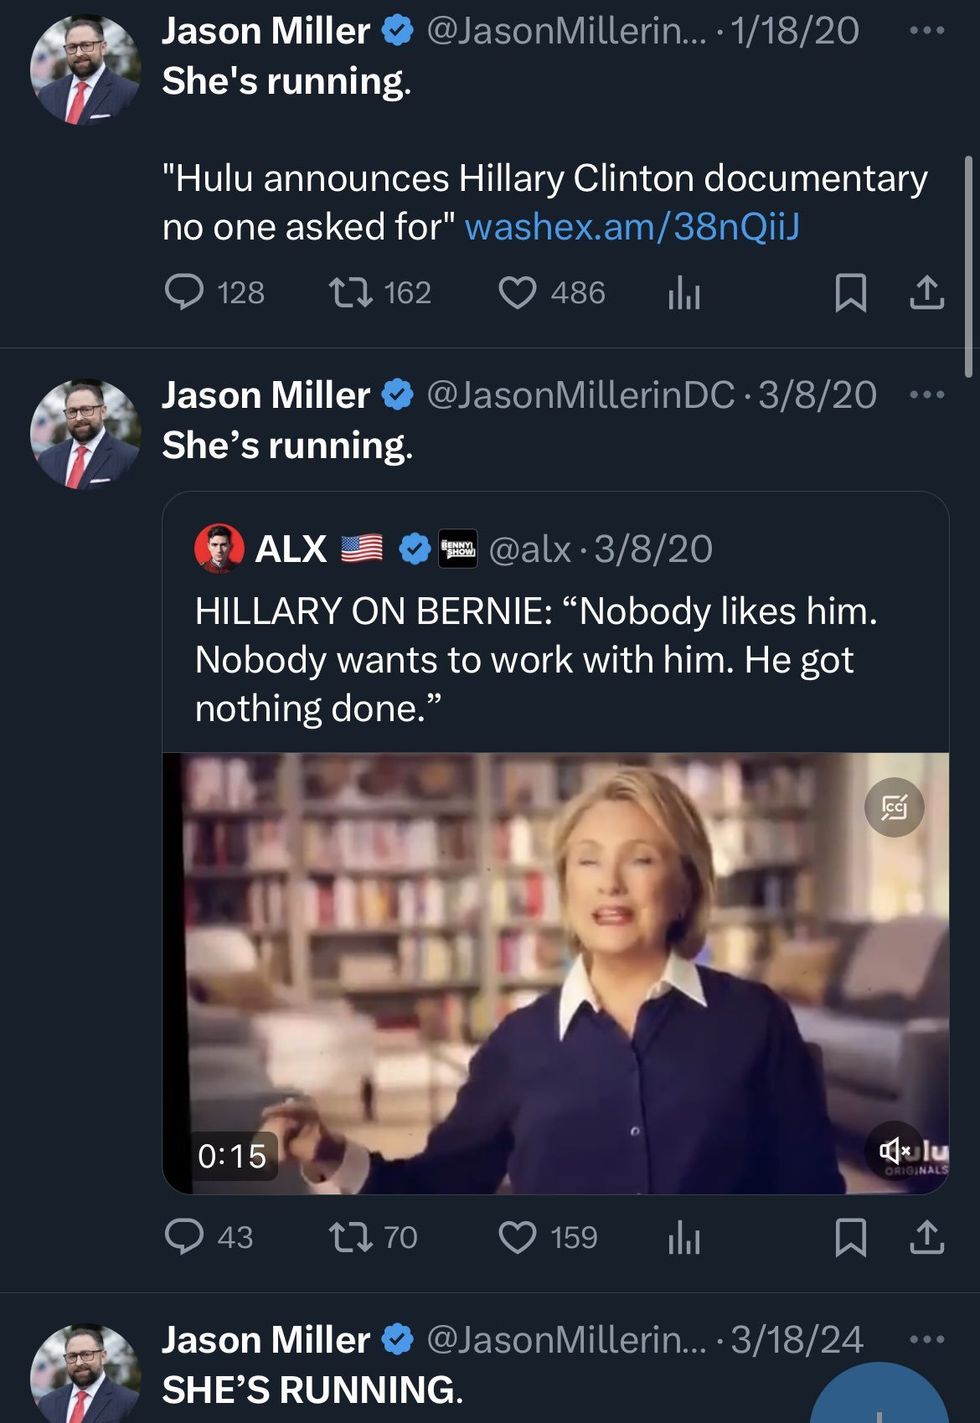 Screenshot of Jason Miller's posts